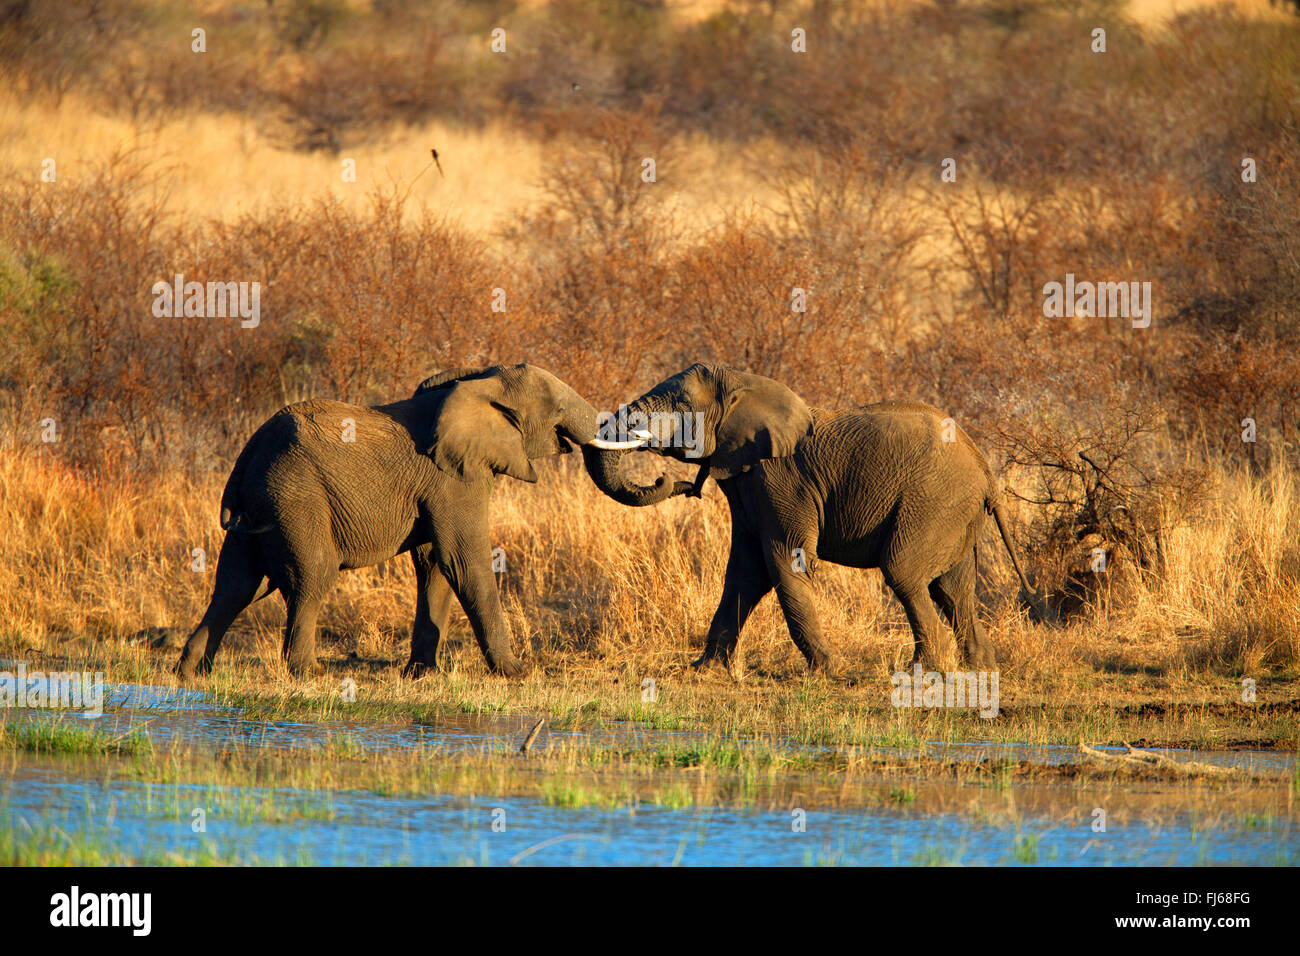 L'éléphant africain (Loxodonta africana), deux jeunes animaux jouer à une place de l'eau, l'Afrique du Sud, Province du Nord Ouest, le Parc National de Pilanesberg Banque D'Images